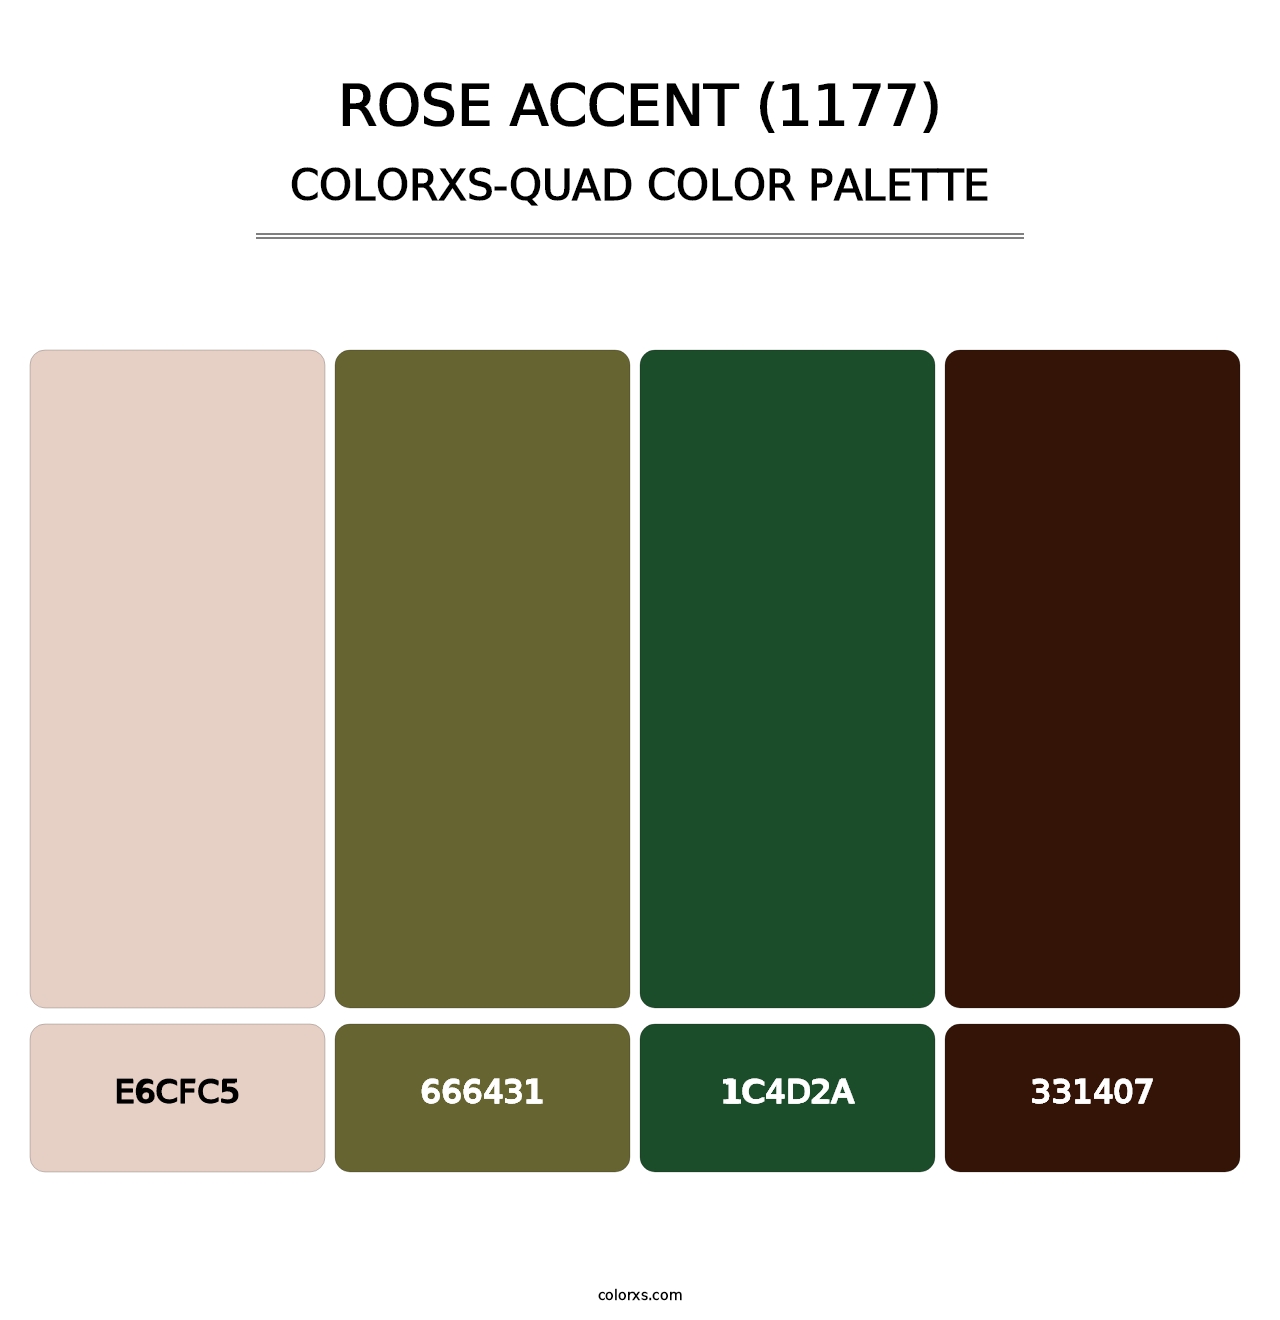 Rose Accent (1177) - Colorxs Quad Palette